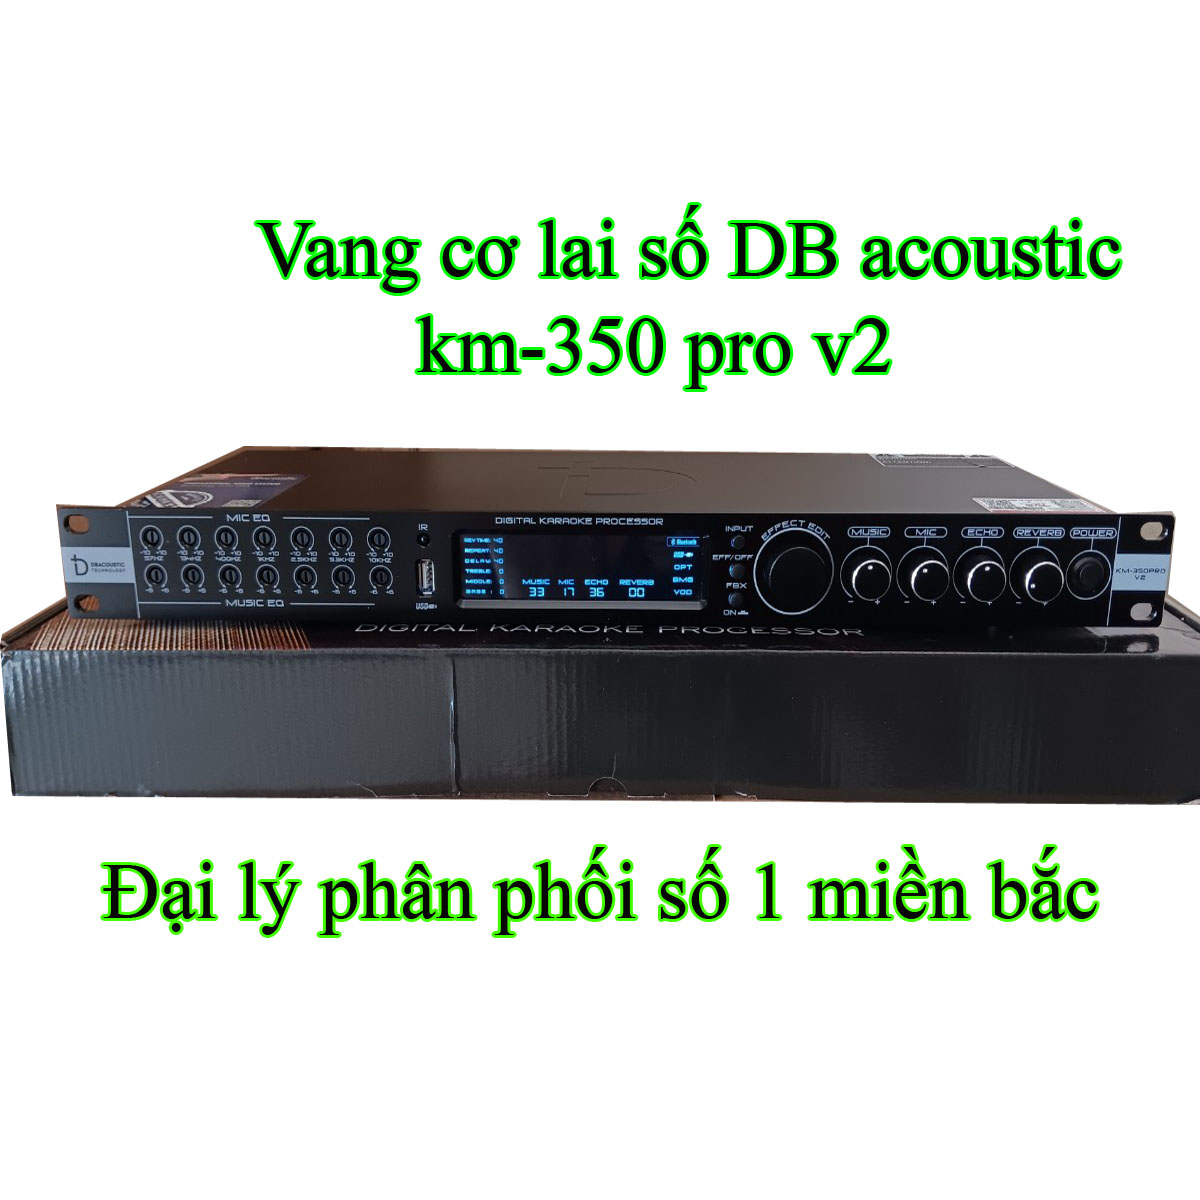 Vang cơ lai số db acoustic Km-350 pro v2 hàng hãng